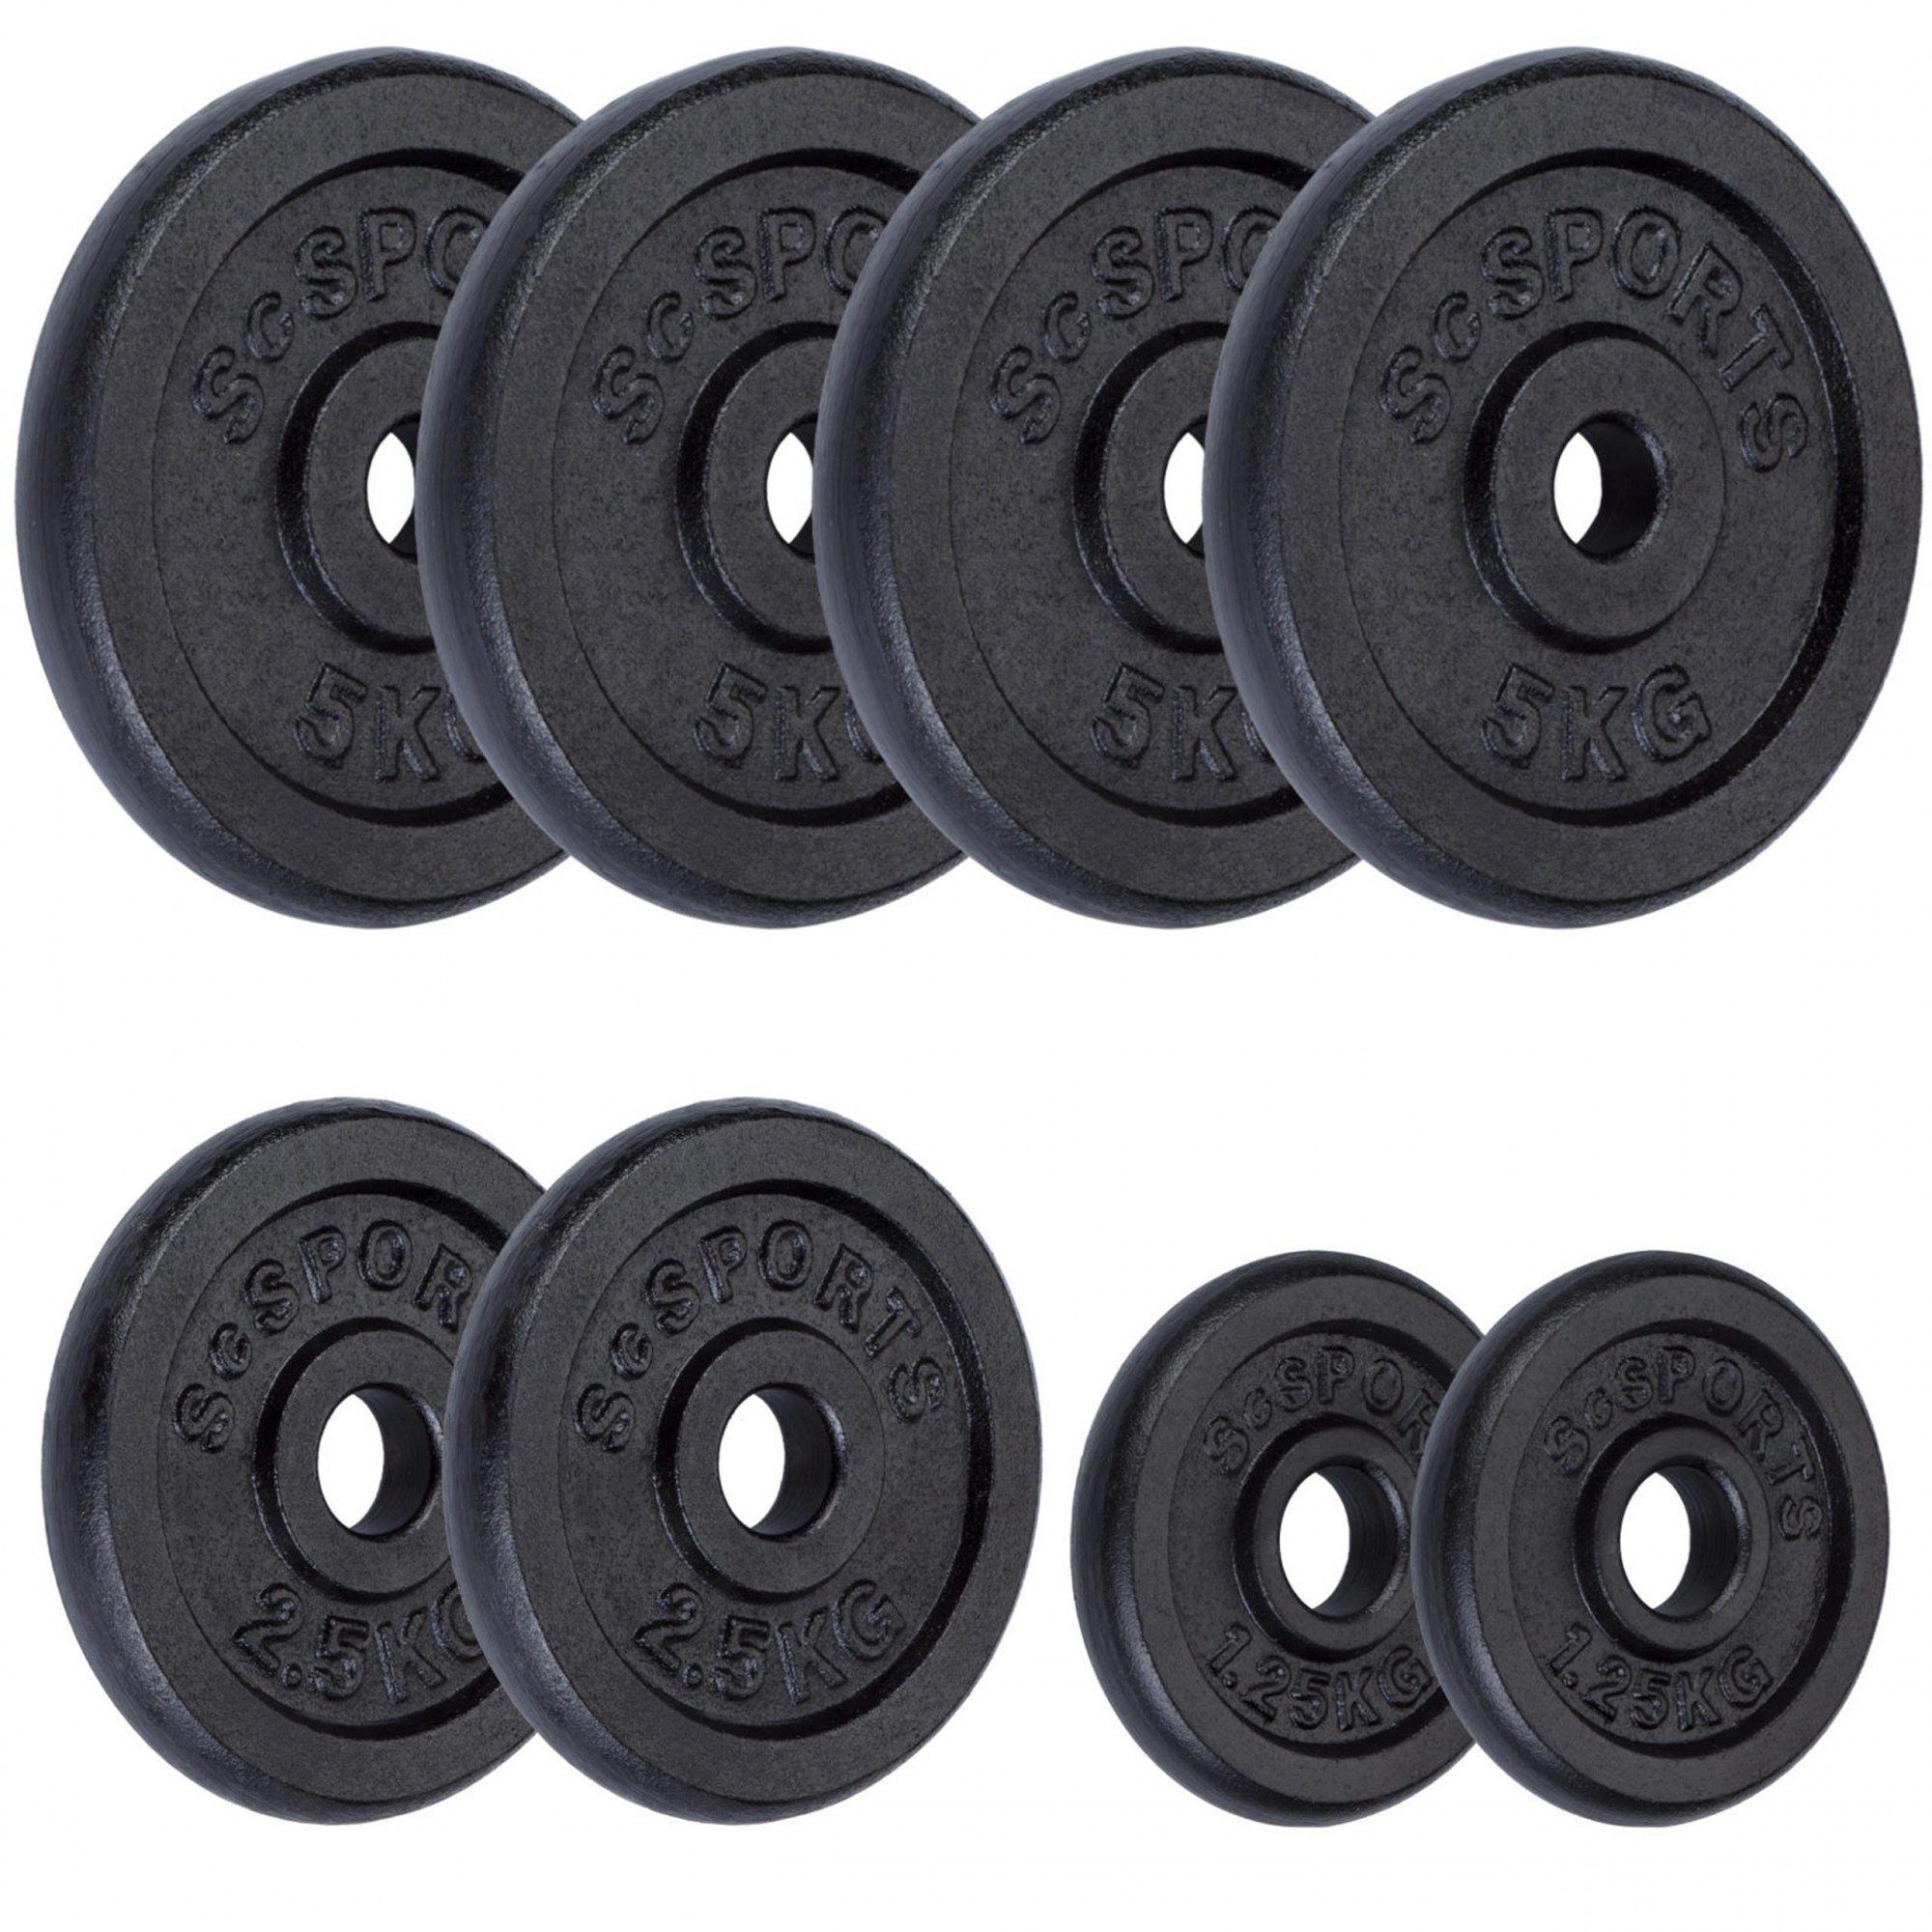 Hantelscheiben Gusseisen Set 30/31mm (10002528-tlg) kg Gewichtsscheiben ScSPORTS® 27,5 Gewichte,